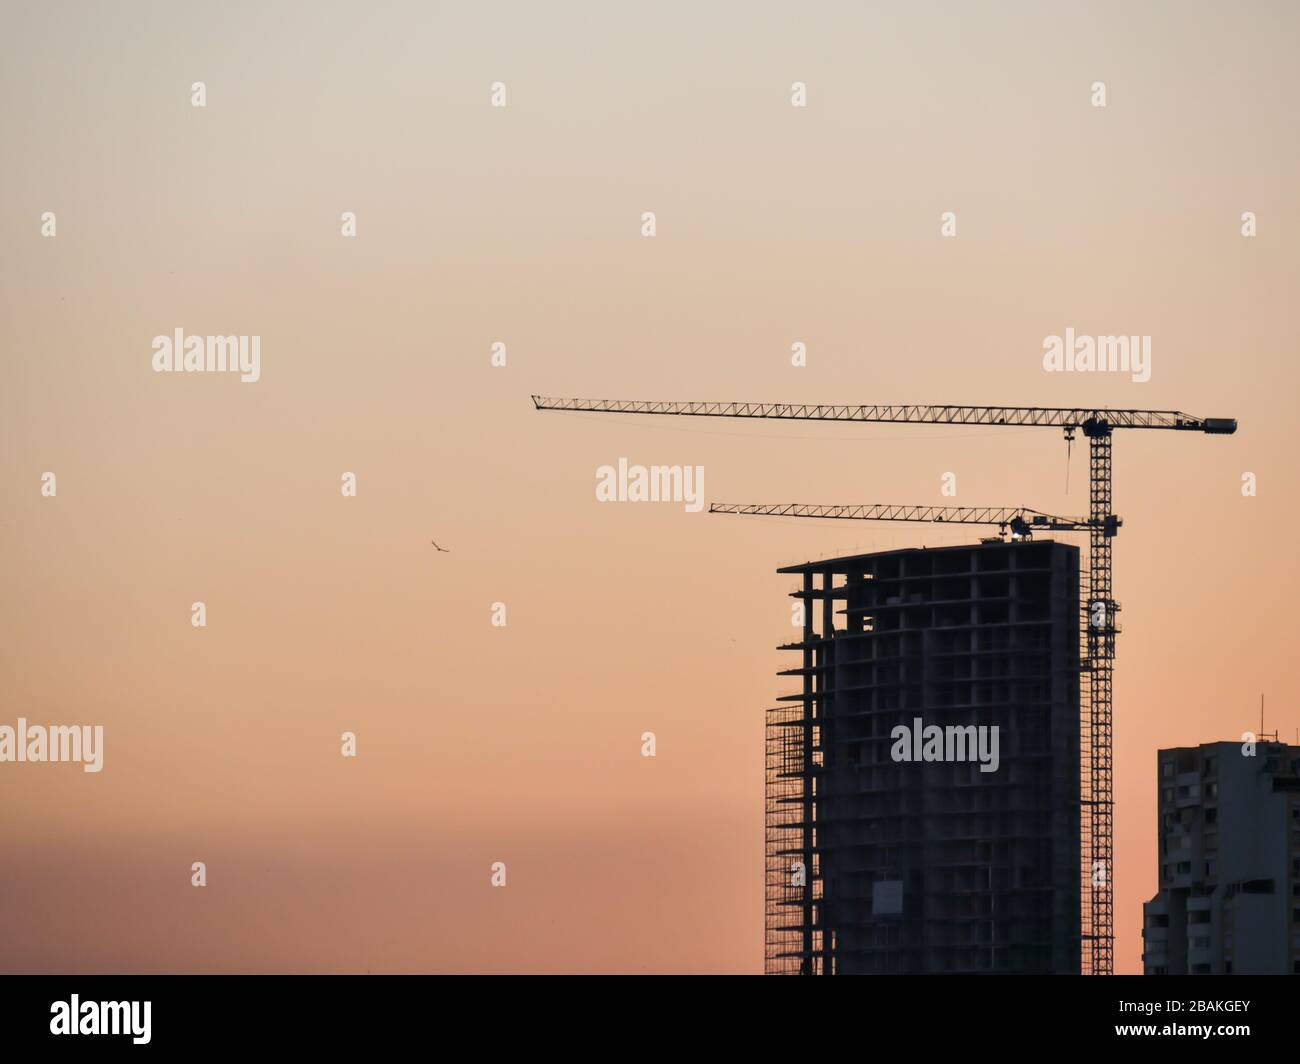 Bau- und Ski-Scraper-Gebäude und Kran gegen bunten Himmel mit Sonne. Baukonzept. Stockfoto